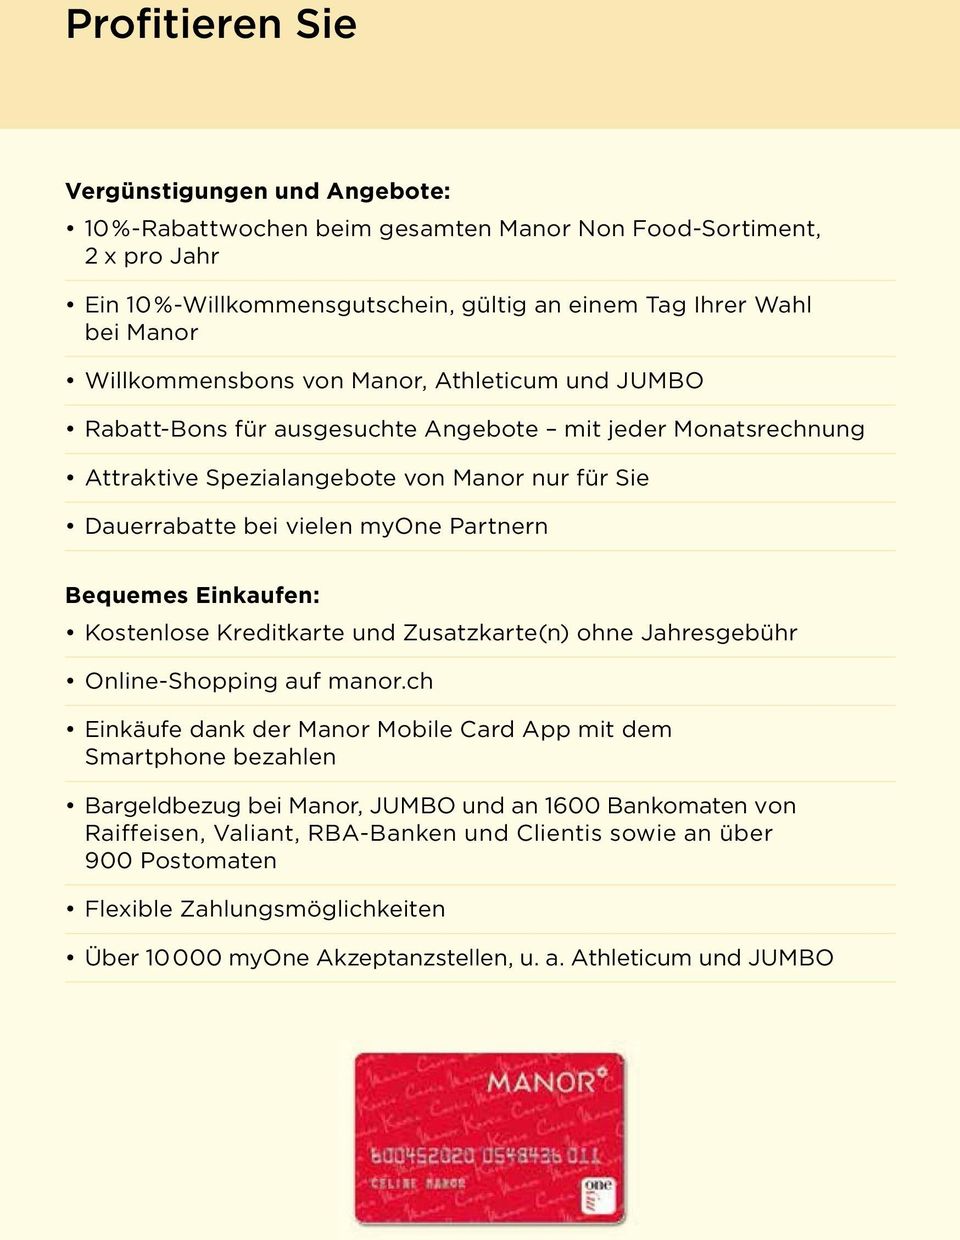 Partnern Bequemes Einkaufen: Kostenlose Kreditkarte und Zusatzkarte(n) ohne Jahresgebühr Online-Shopping auf manor.